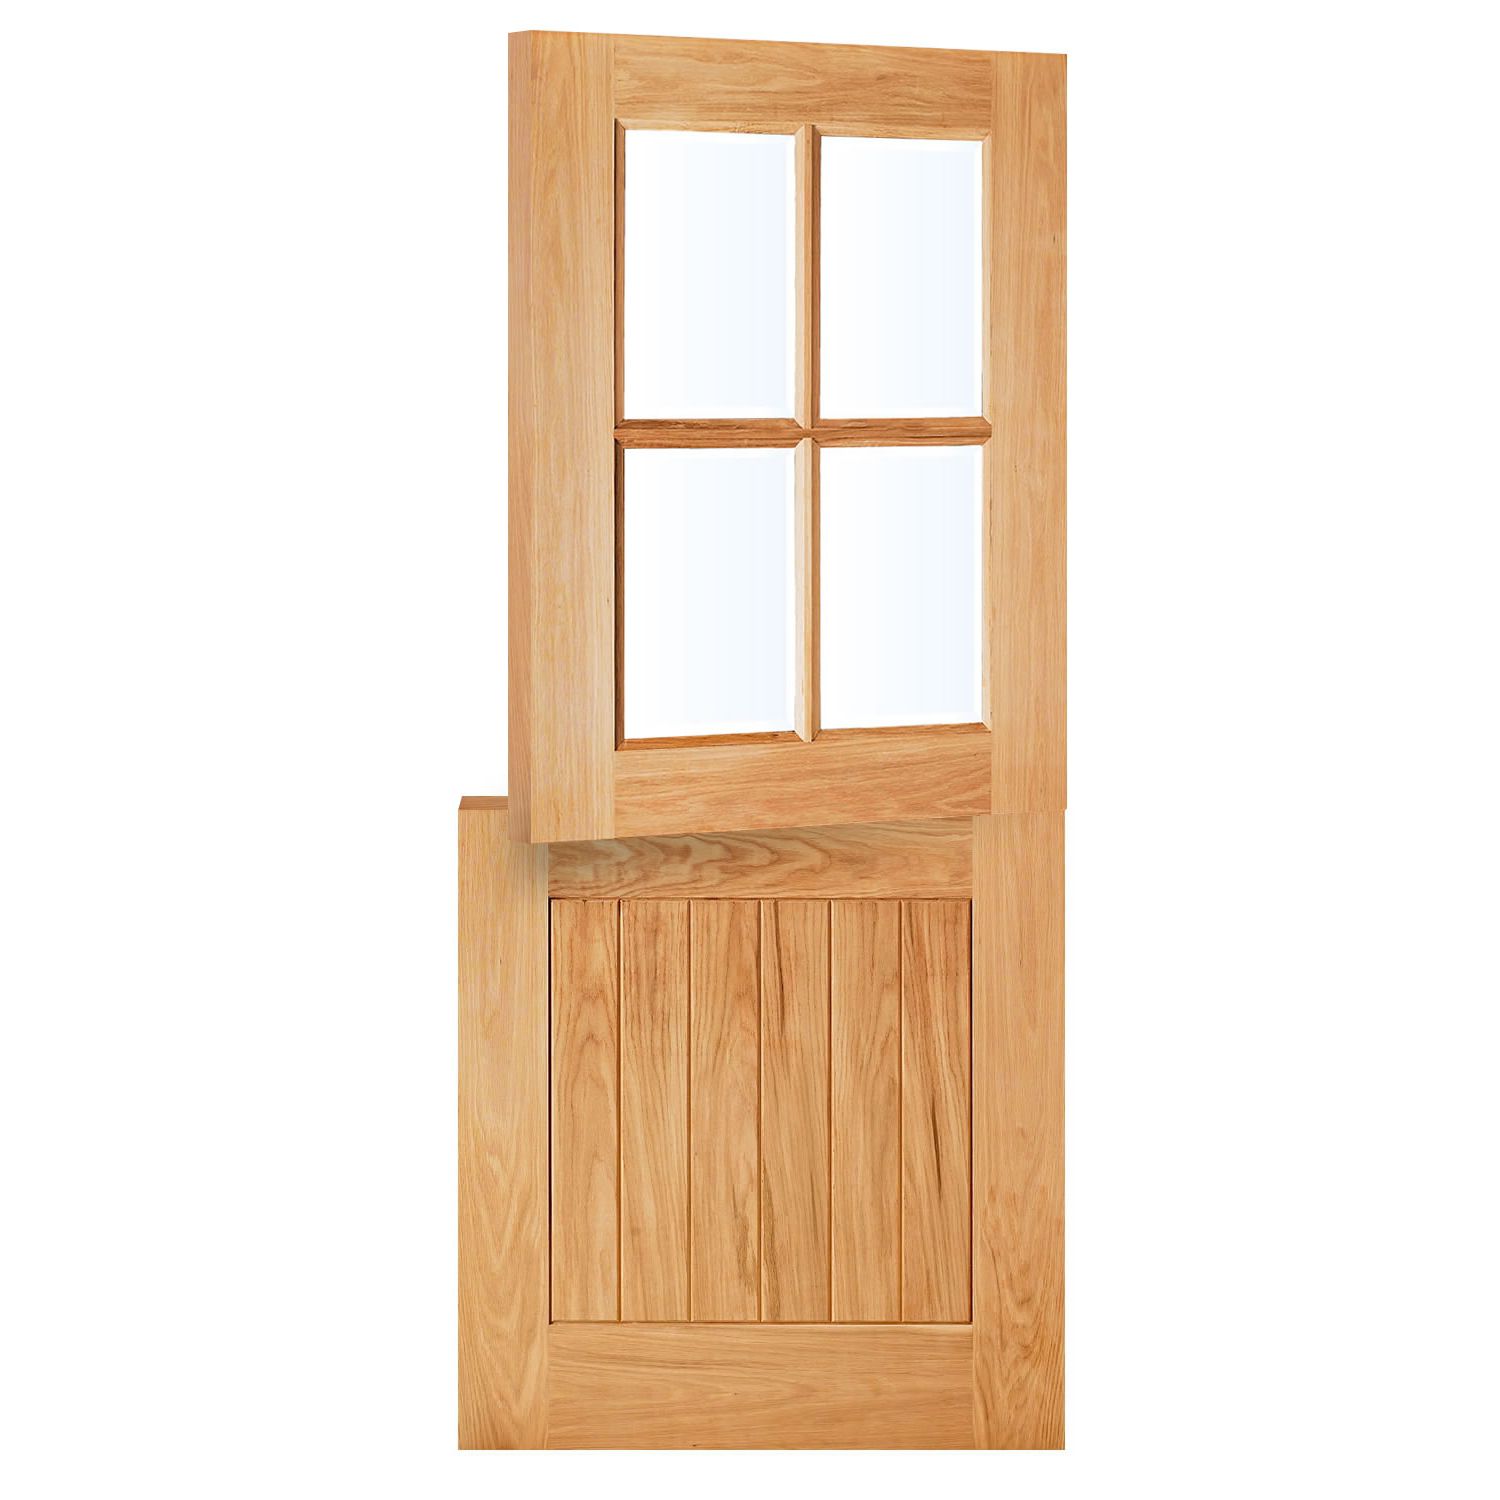 Wooden stable doors